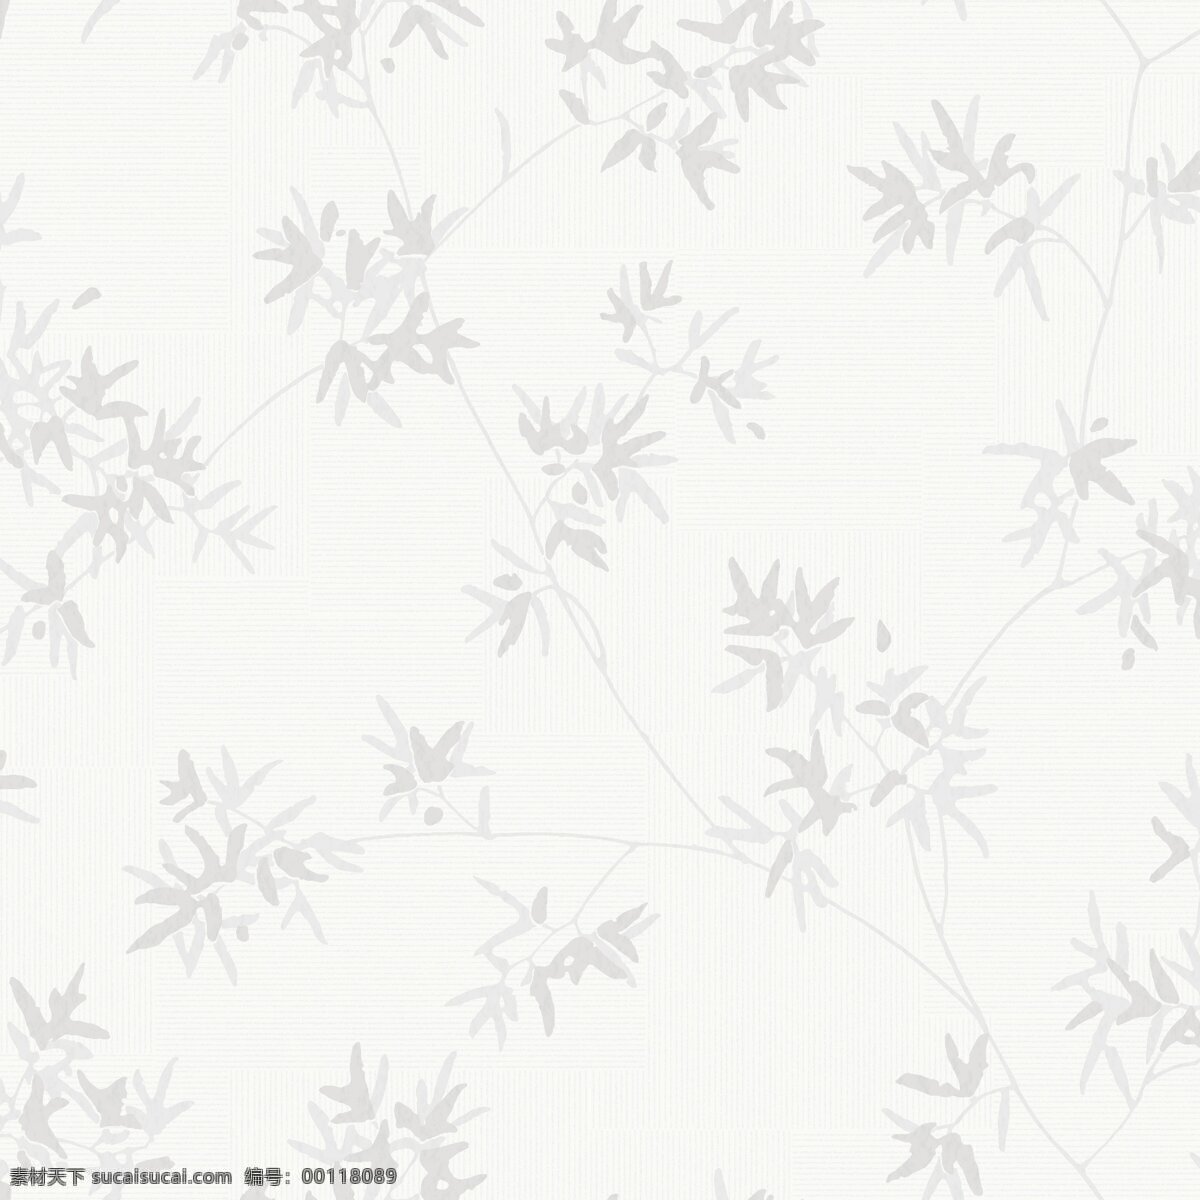 雅致 植物 壁纸 图案 浅色底纹 清新风格 树叶图案 树枝图案 竹叶图案